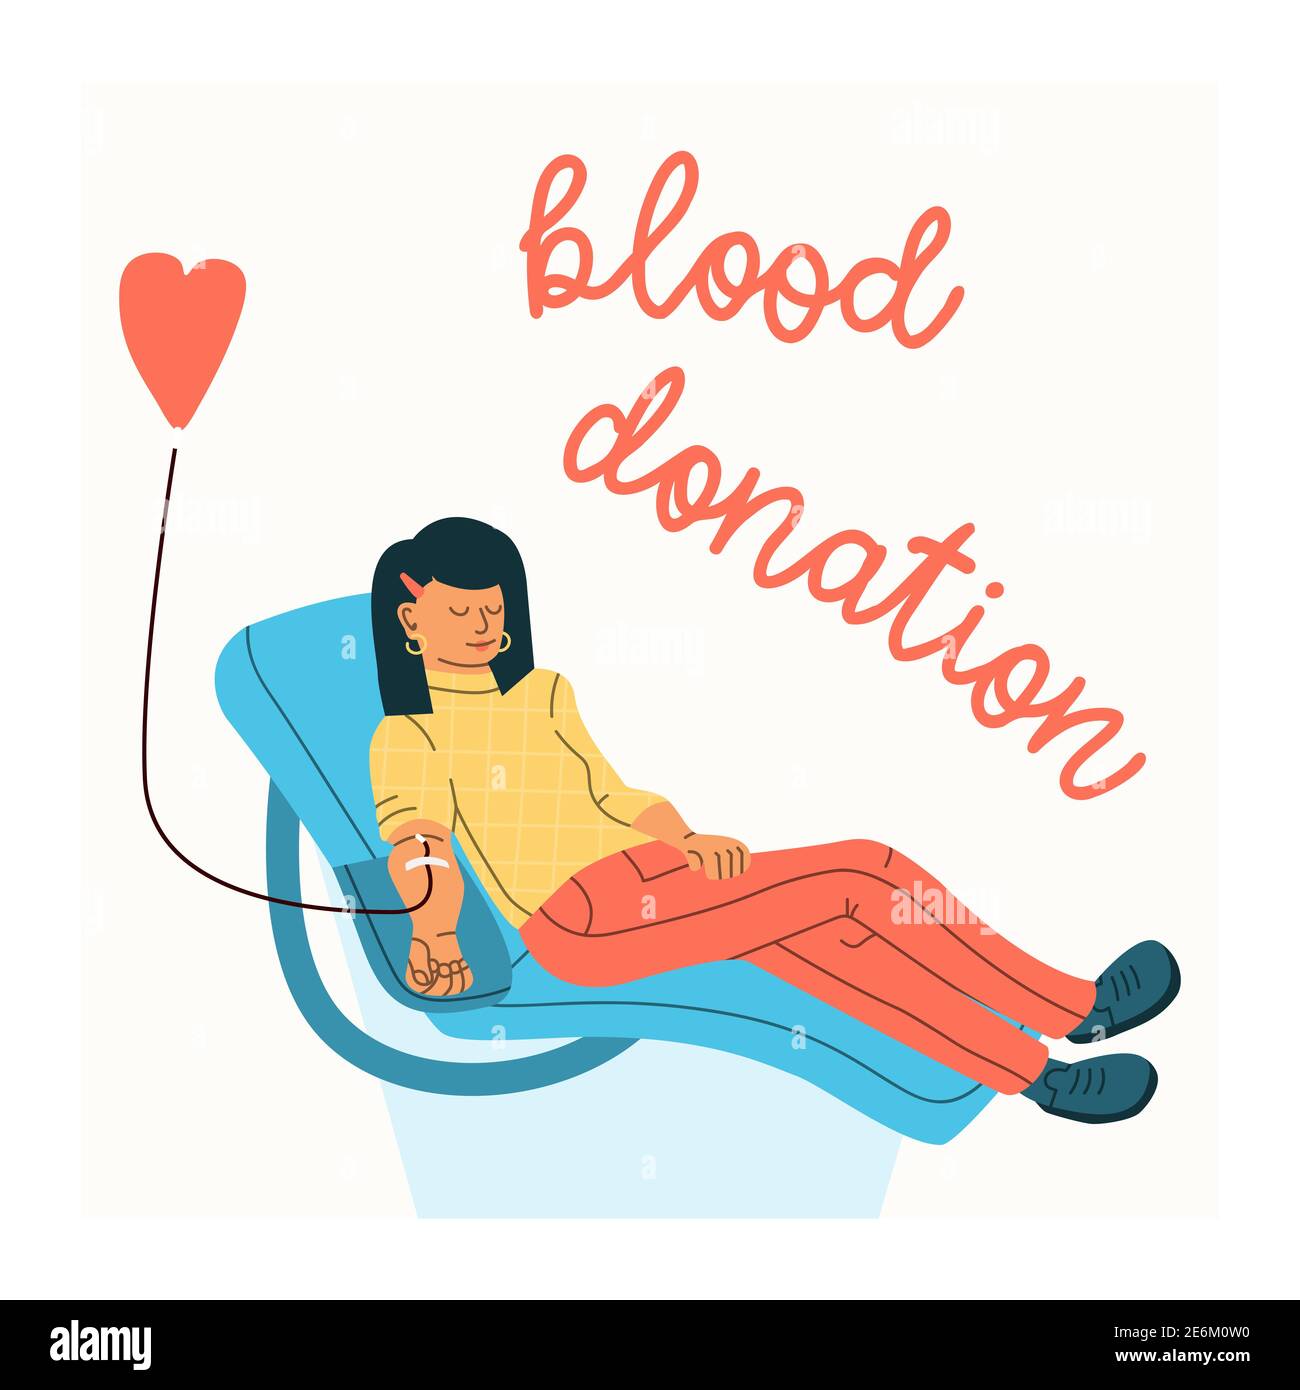 Vektor-Illustration einer Frau freiwillig spendet Blut. Konzept der Blutspende. Flacher Trendcharakter. Stock Vektor